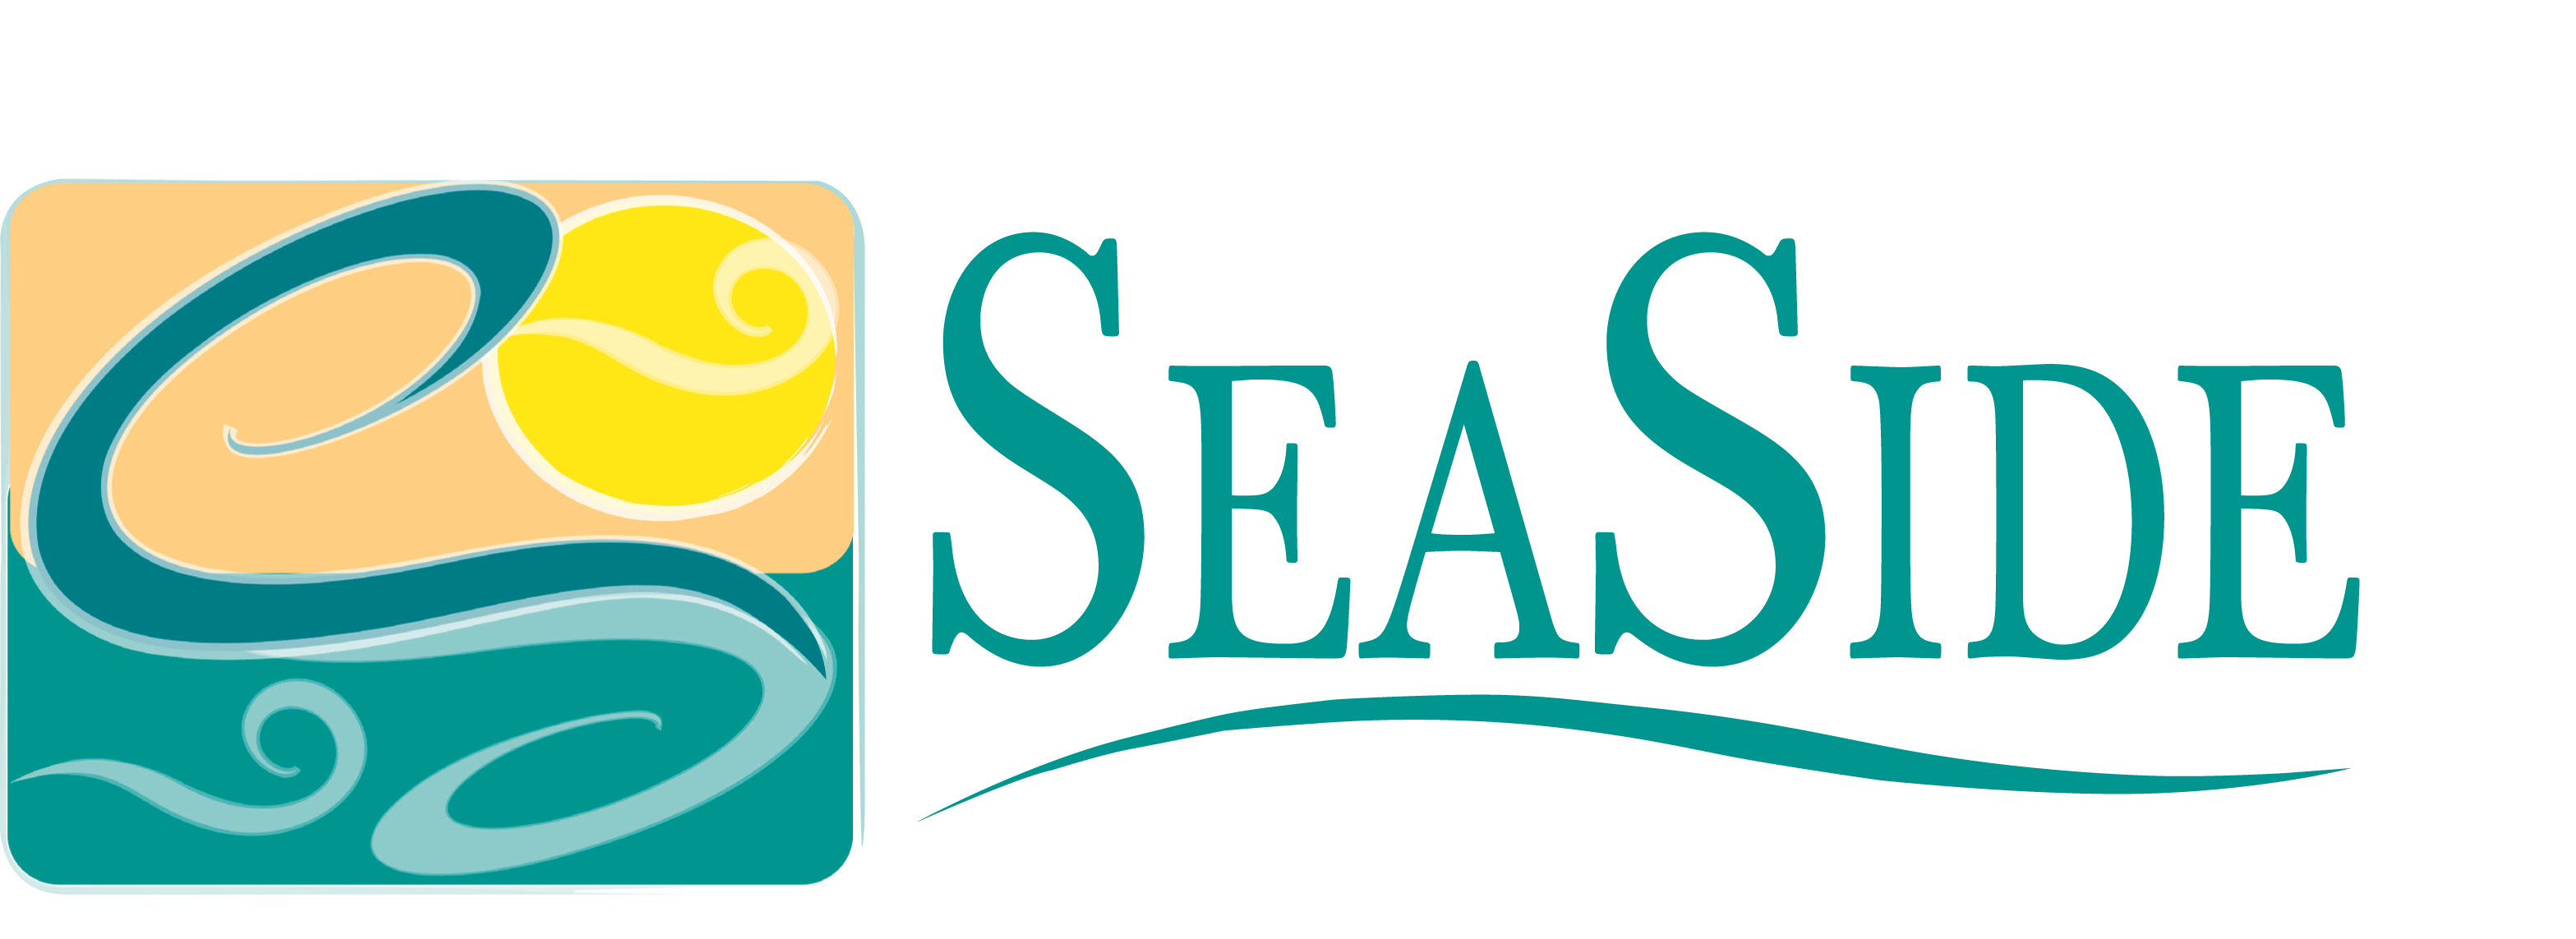 Seaside Resorts